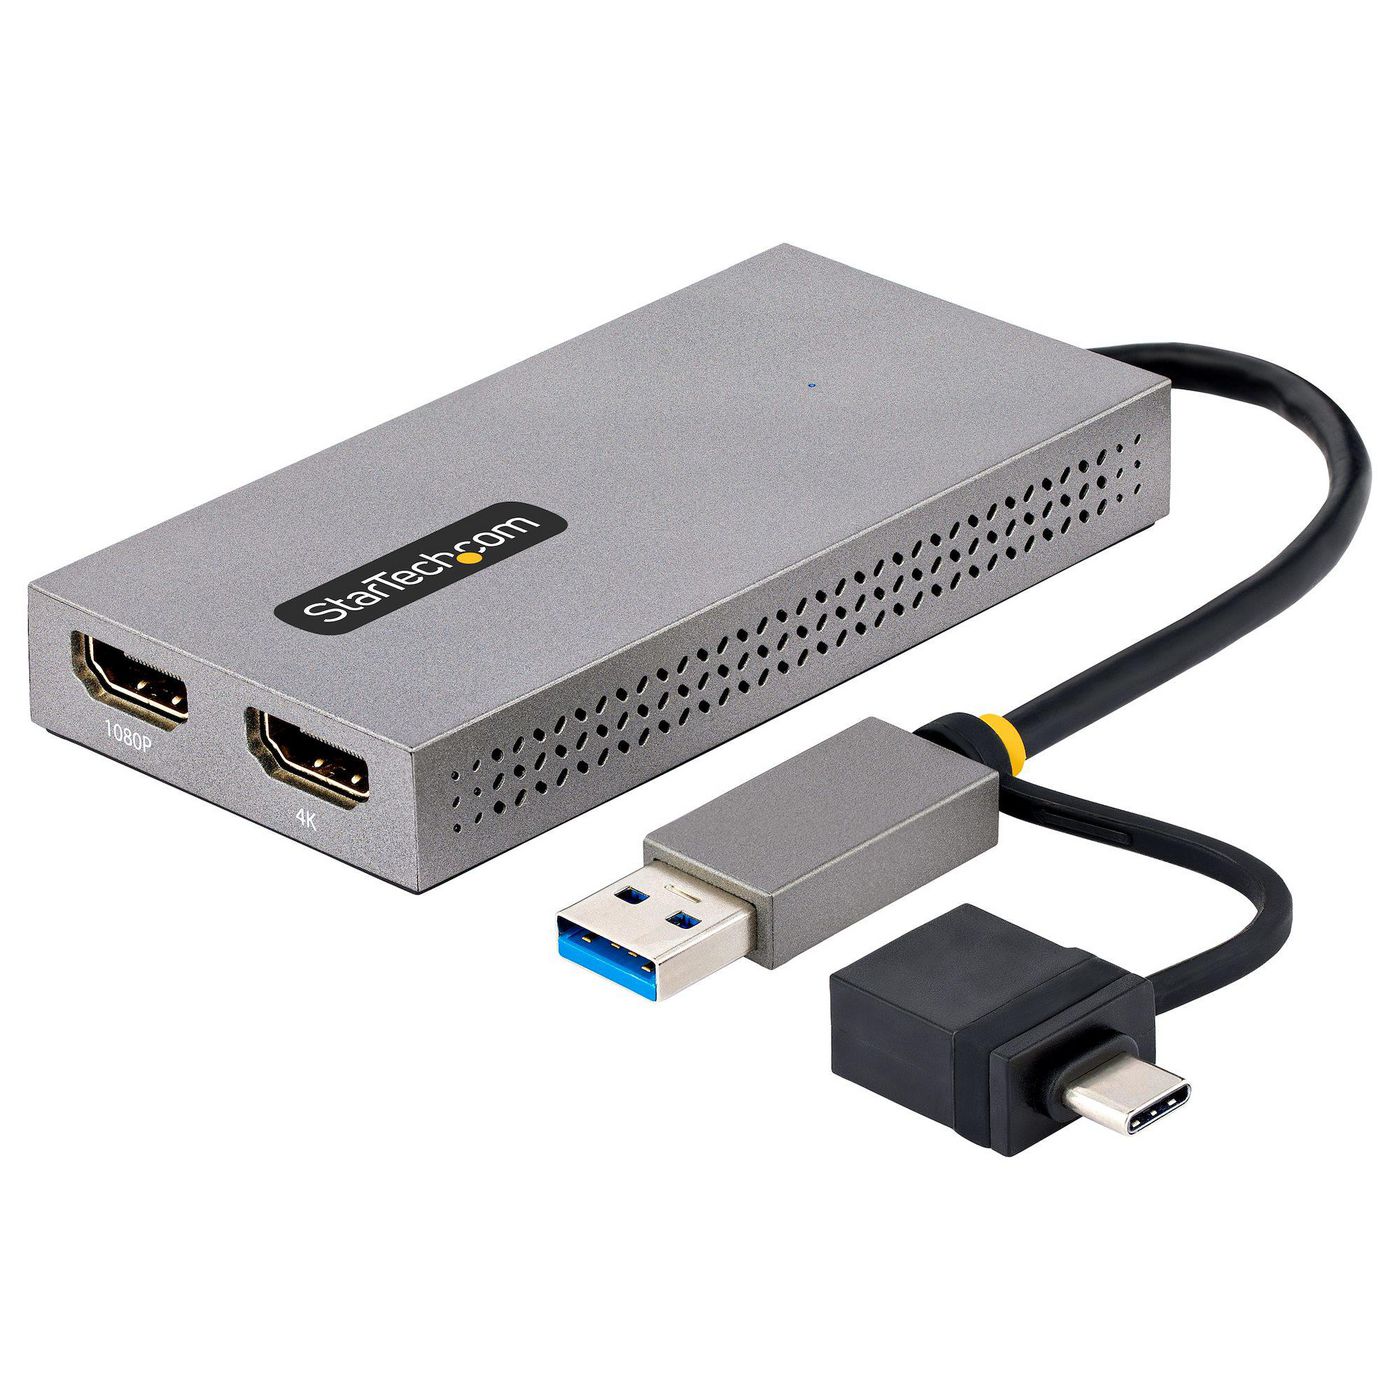 StarTechcom 107B-USB-HDMI W128276683 Usb To Dual Hdmi Adapter, Usb 